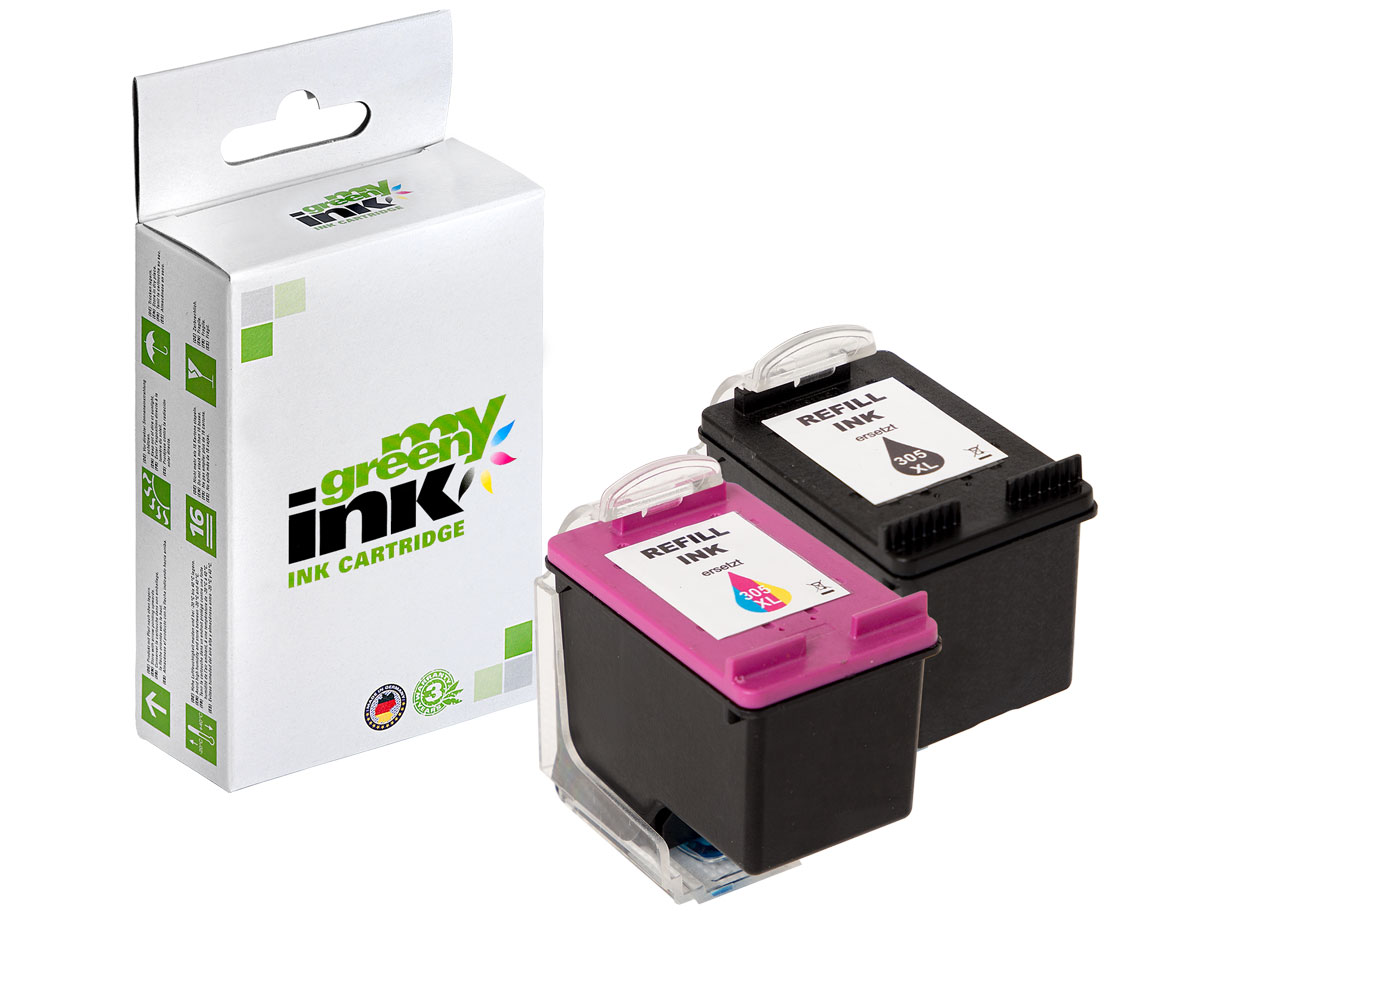 Refill ink cartridge for HP DeskJet 2320, Envy 6010 a. o.